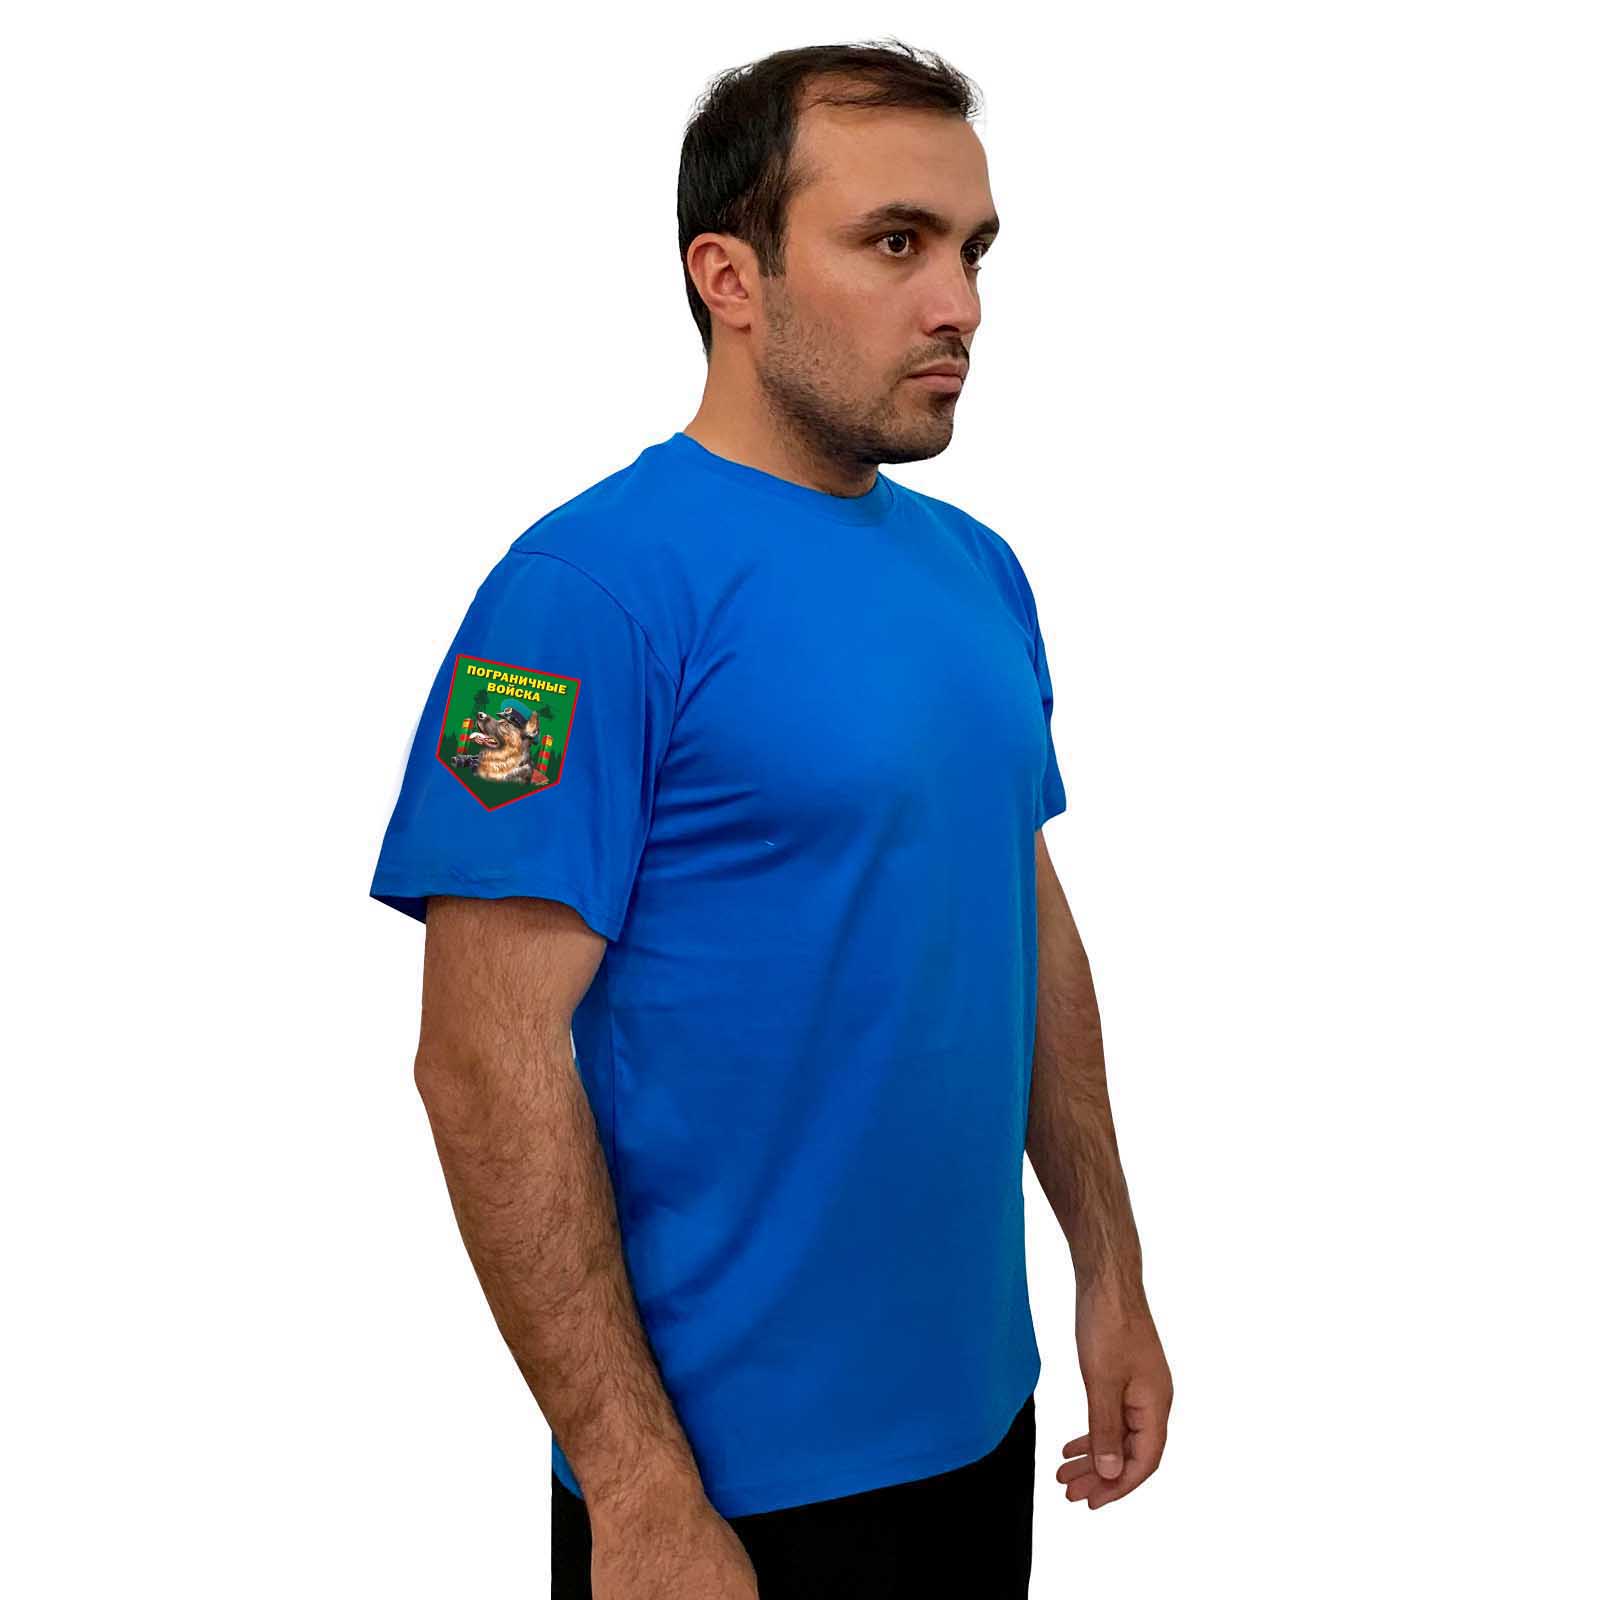 Васильковая футболка с термотрансфером "Пограничные войска" на рукаве